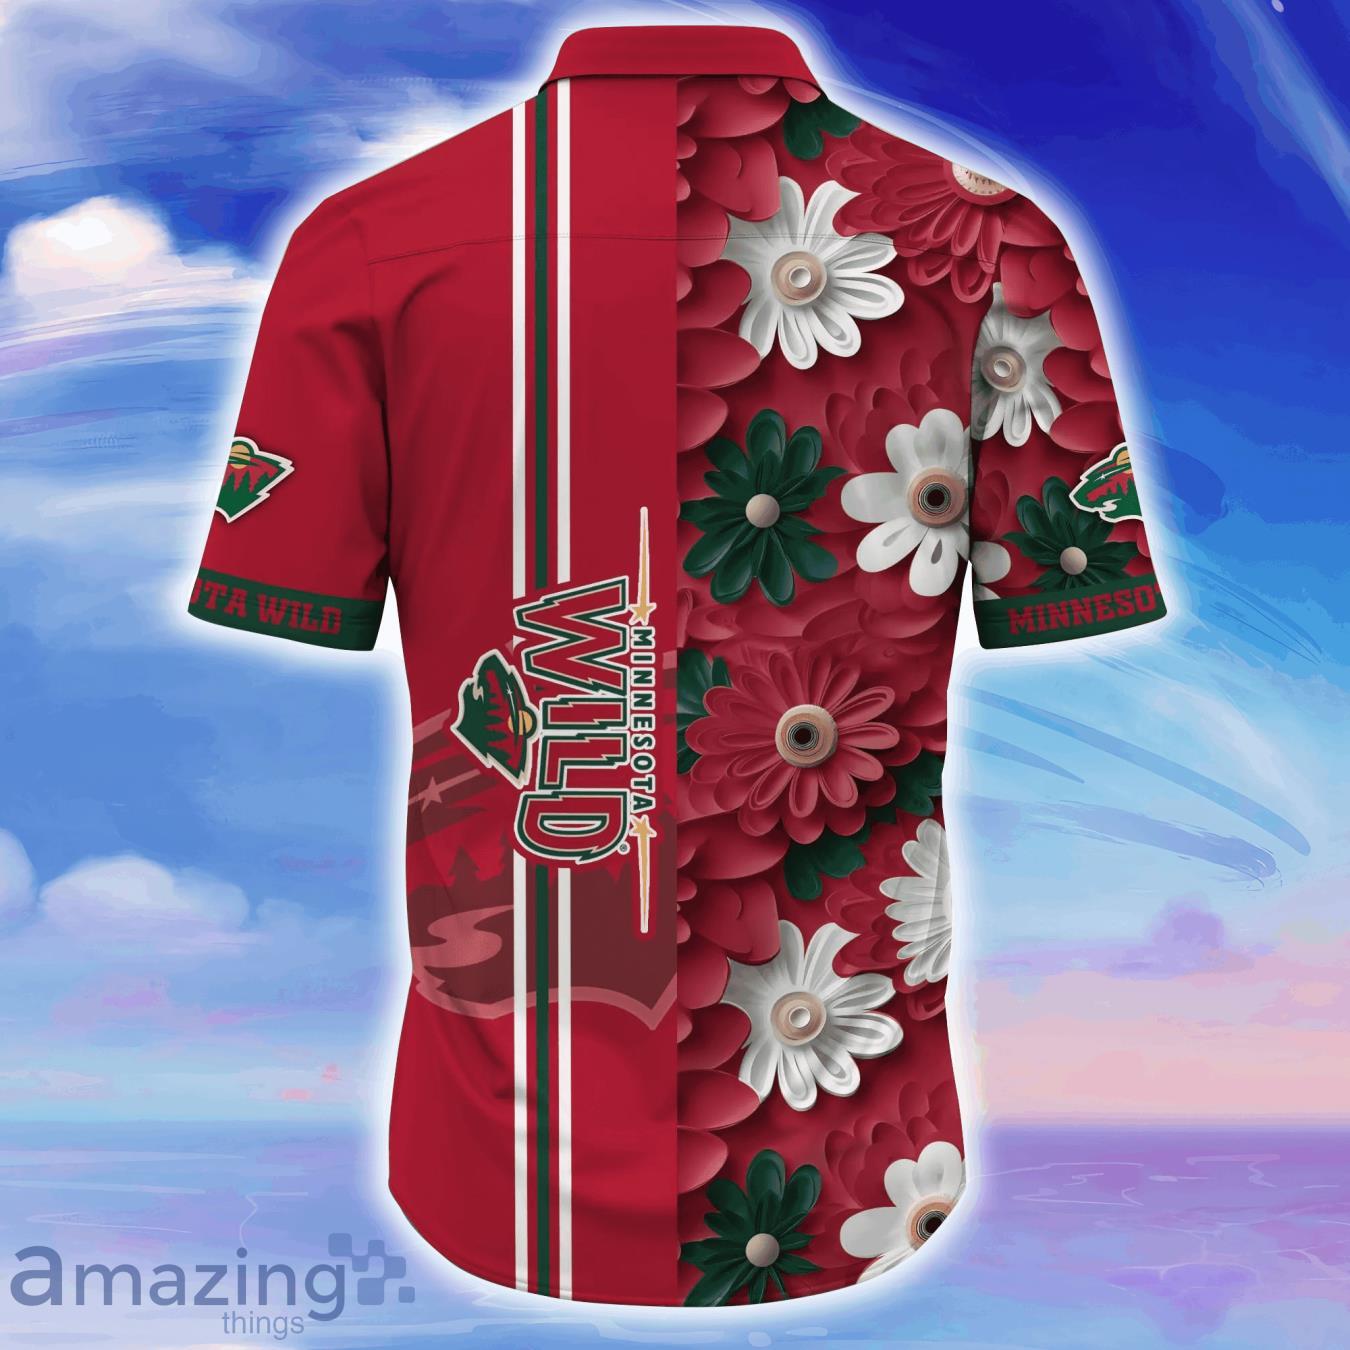 Minnesota Wild NHL Flower Hawaiian Shirt Special Gift For Men Women Fans -  Teeclover